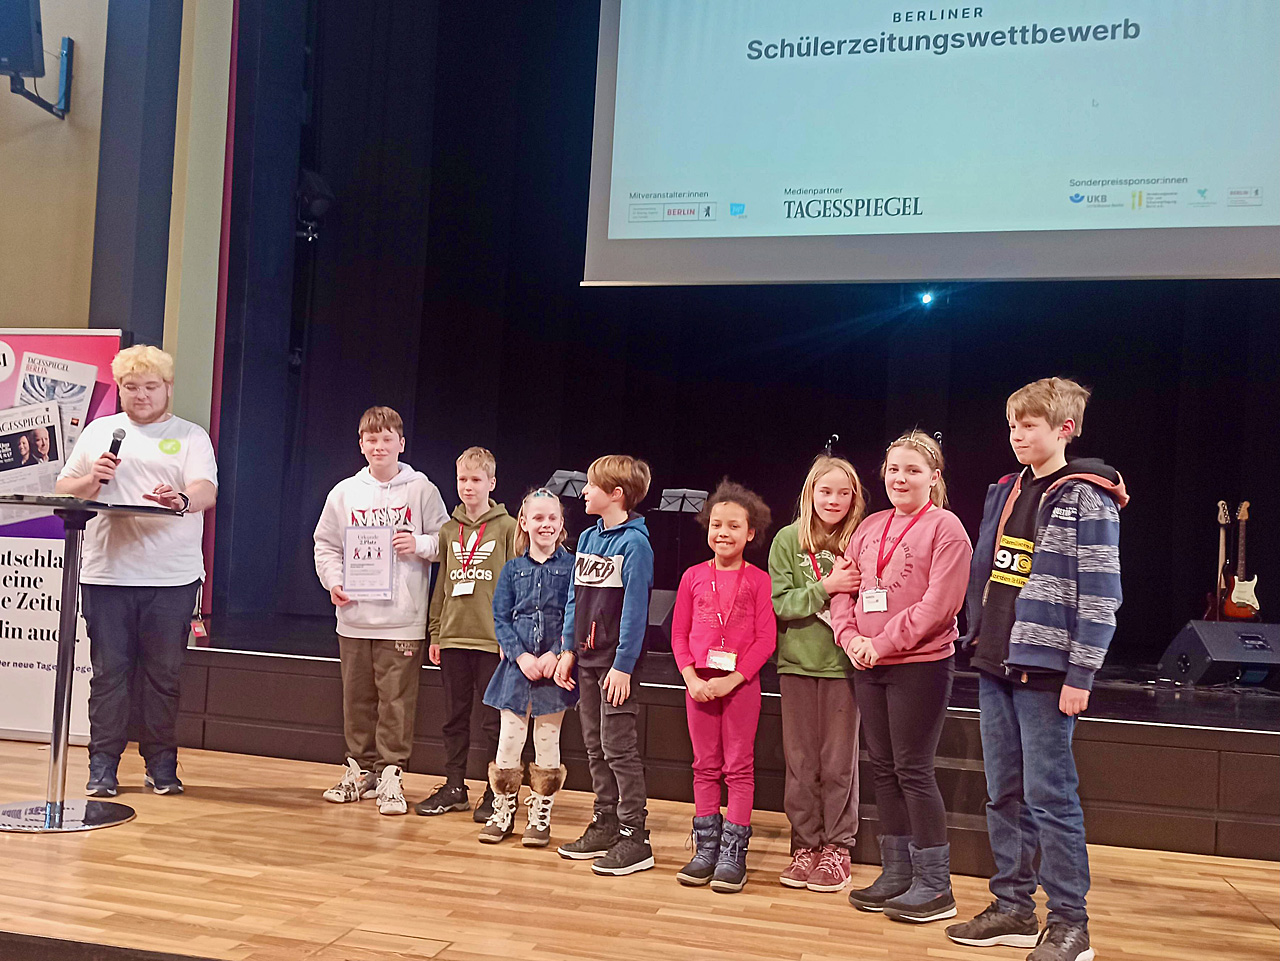 SCHNIPSEL: die Schülerzeitung des Campus Hannah Höch gewinnt zwei Preise beim Berliner Schülerzeitungswettbewerb